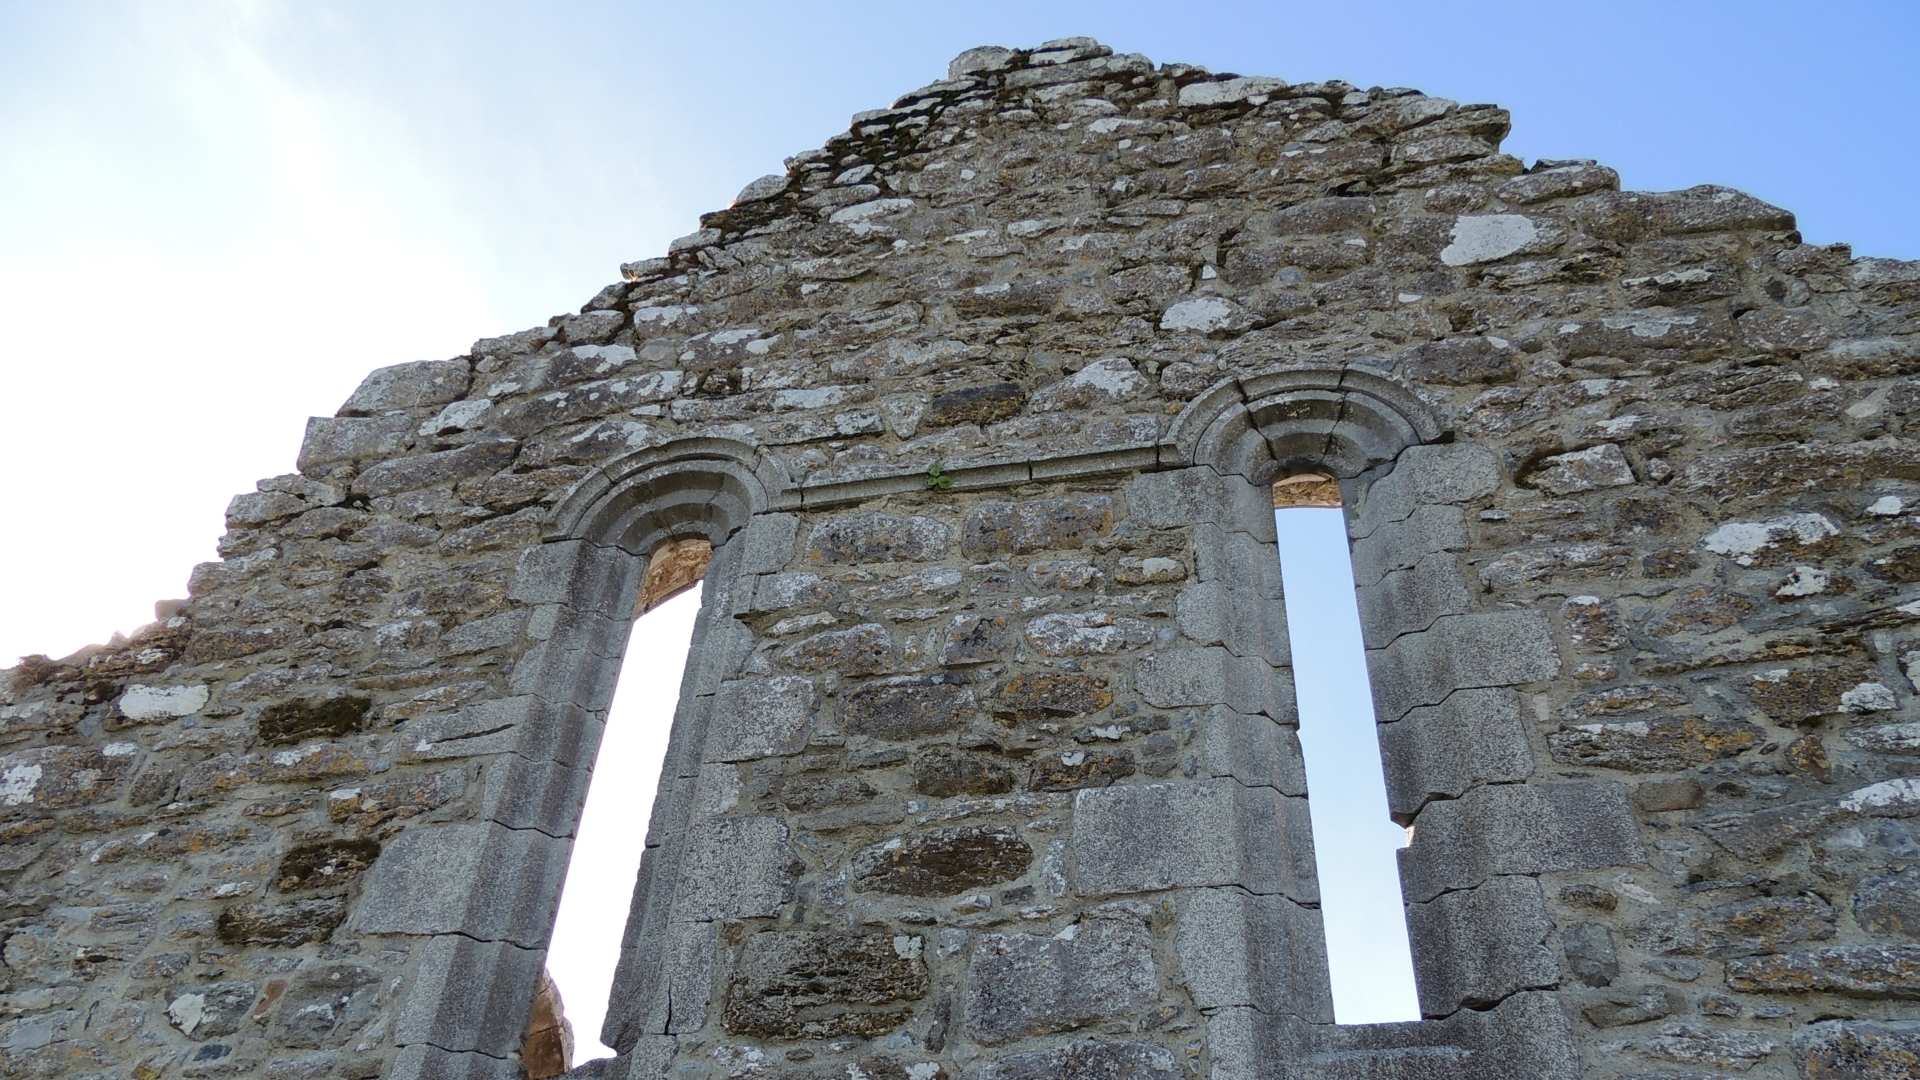 Free download wallpaper Ireland, Monastery, Religious, Clonmacnoise, Clonmacnoise Monastery on your PC desktop